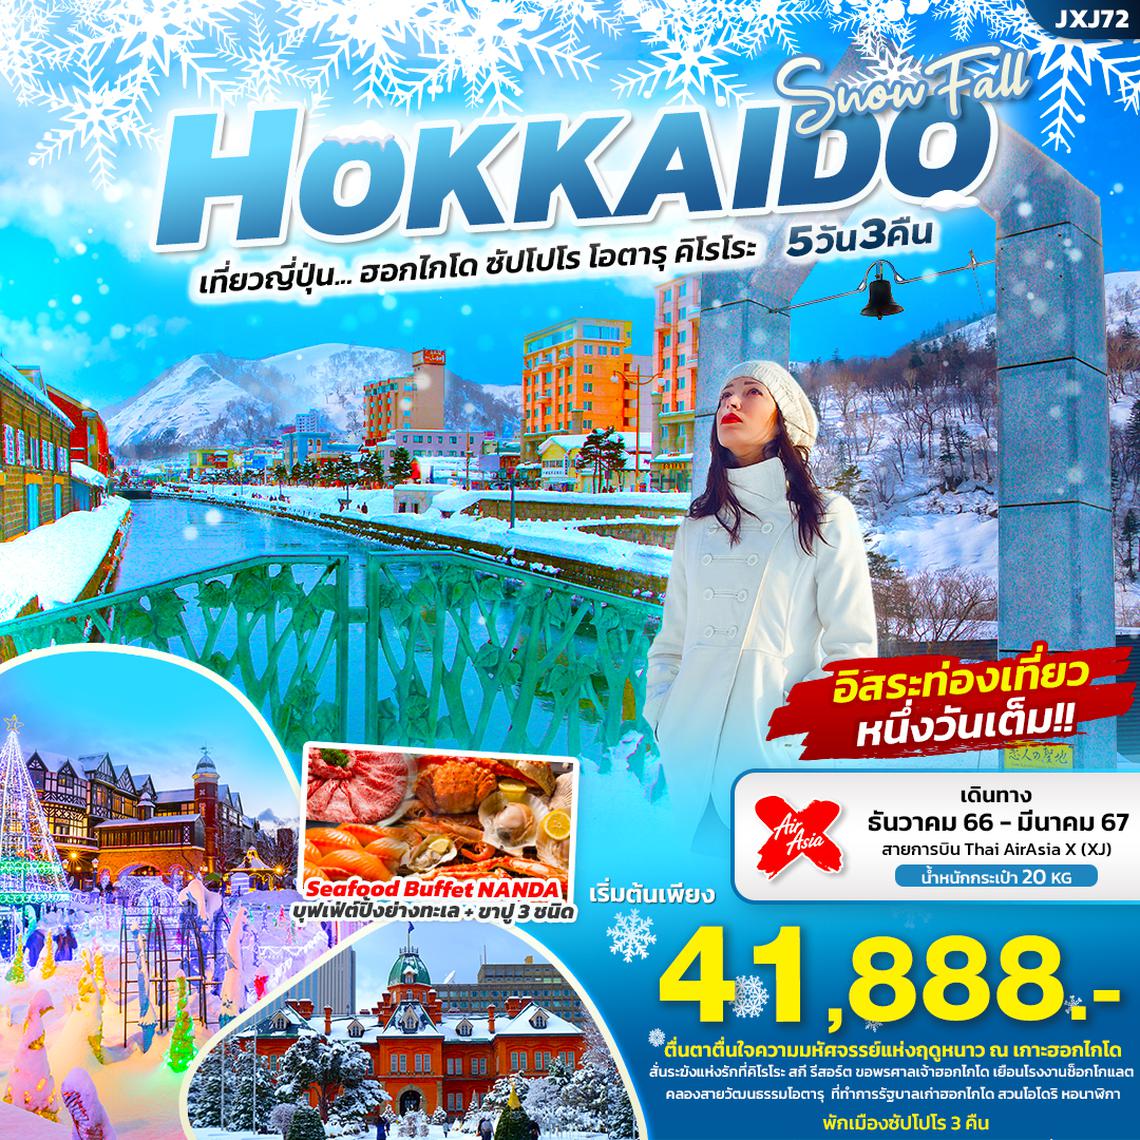 ทัวร์ญี่ปุ่น SNOW FALL HOKKAIDO ฮอกไกโด ซัปโปโร โอตารุ คิโรโระ 5 วัน 3 คืน